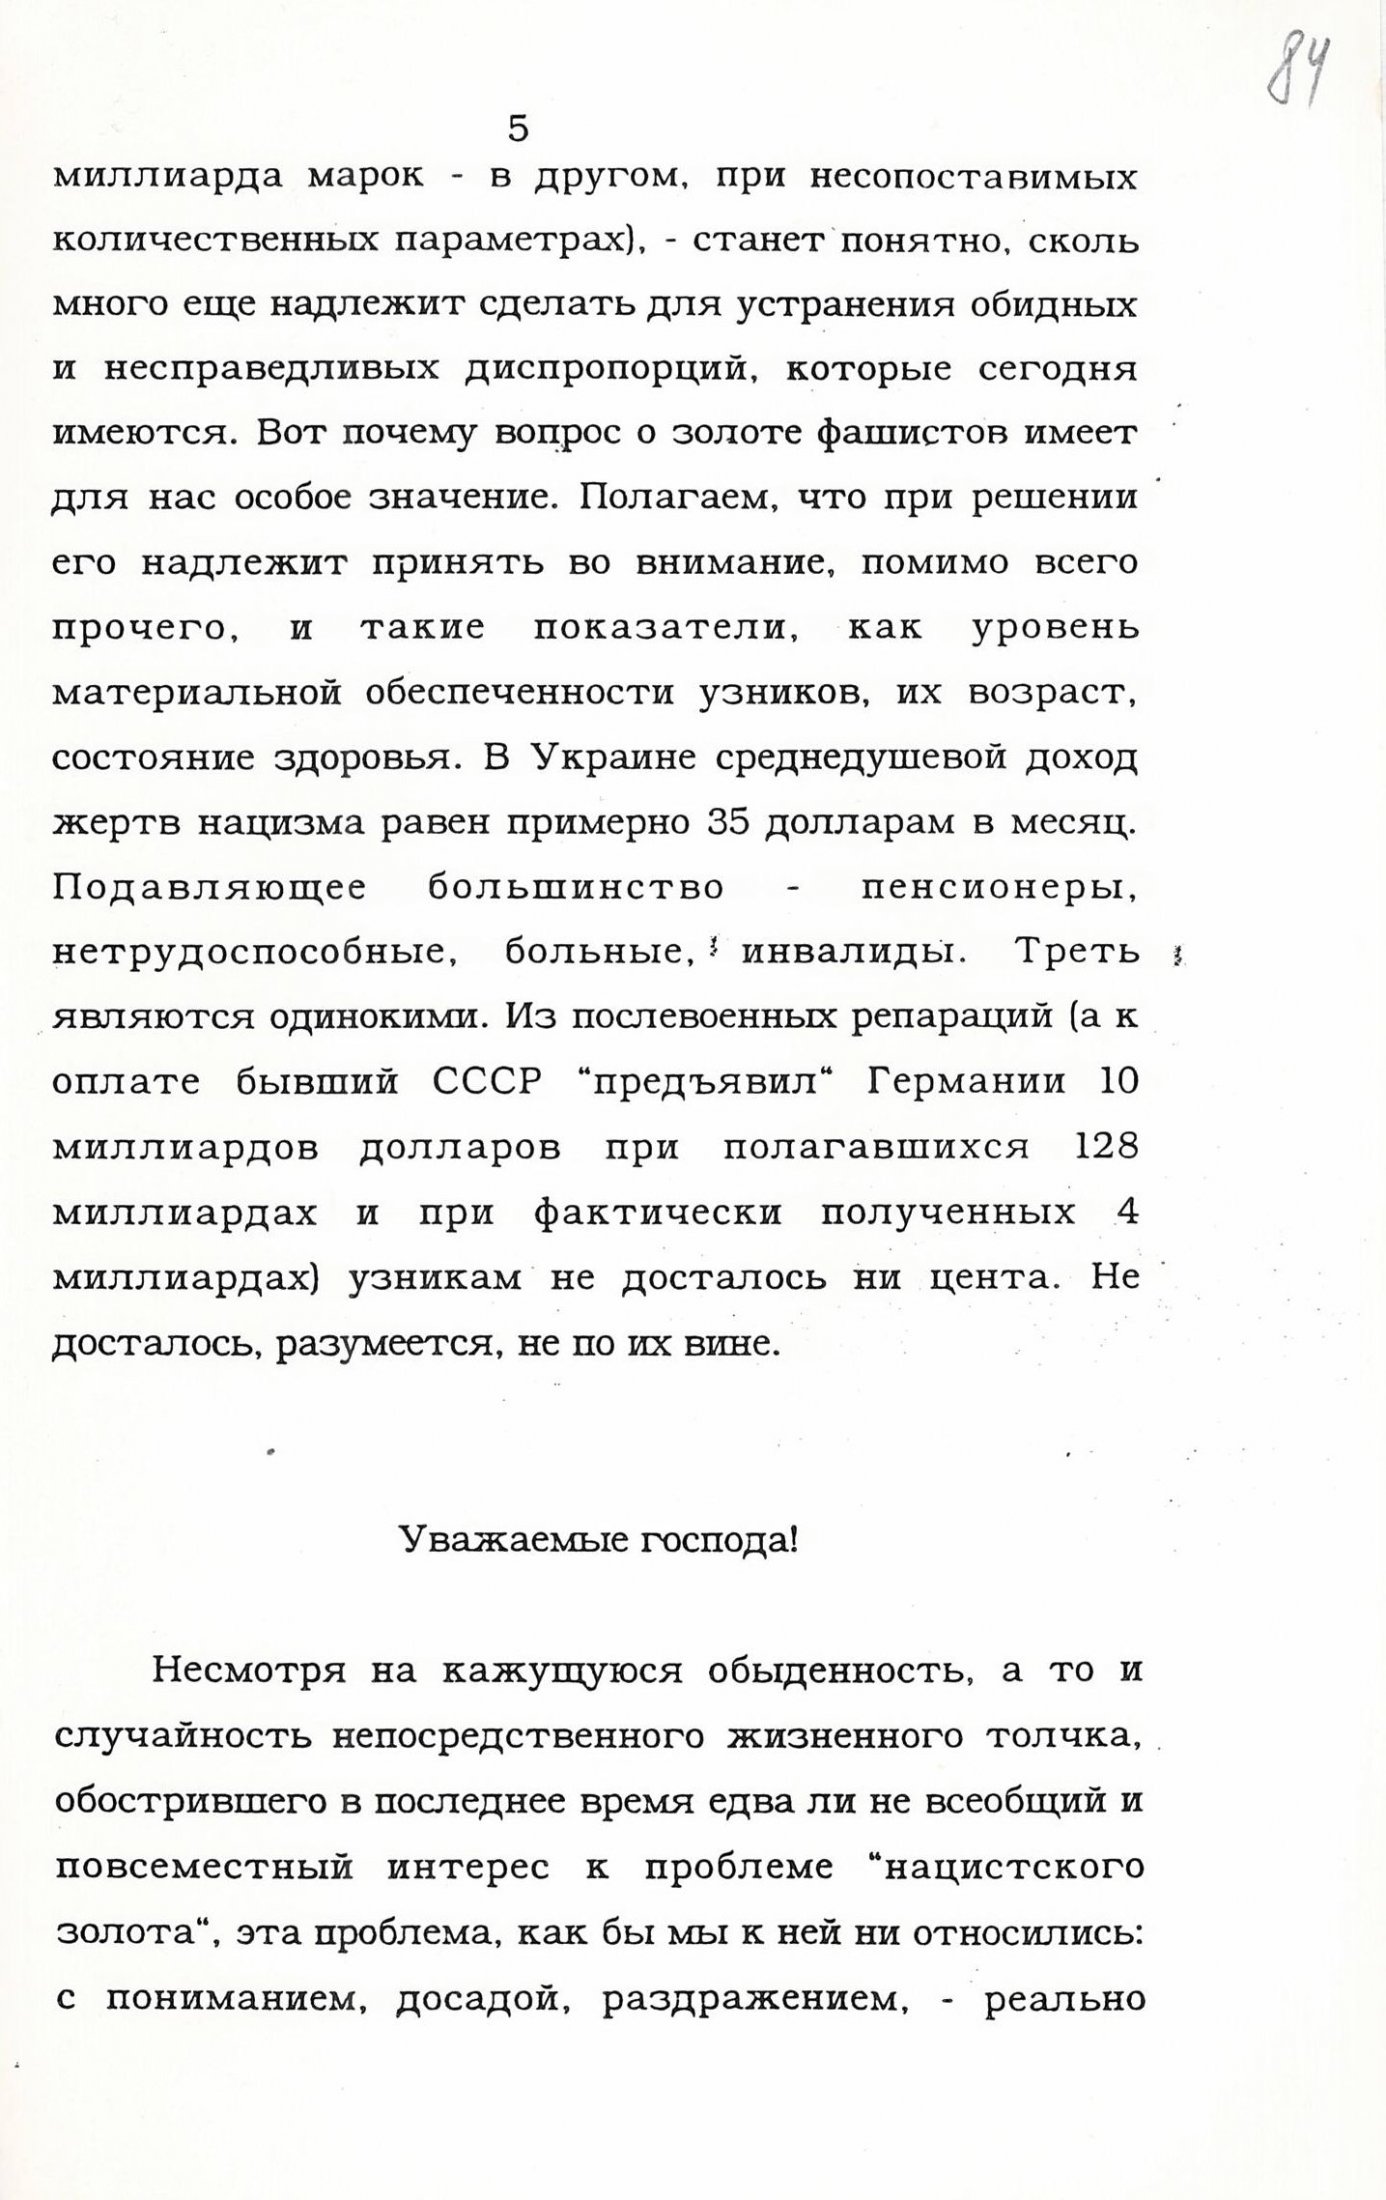 Доповідь делегації України на Міжнародній конференції у м. Лондоні по проблемам “нацистського золота”. 2 - 4 грудня 1997 р.